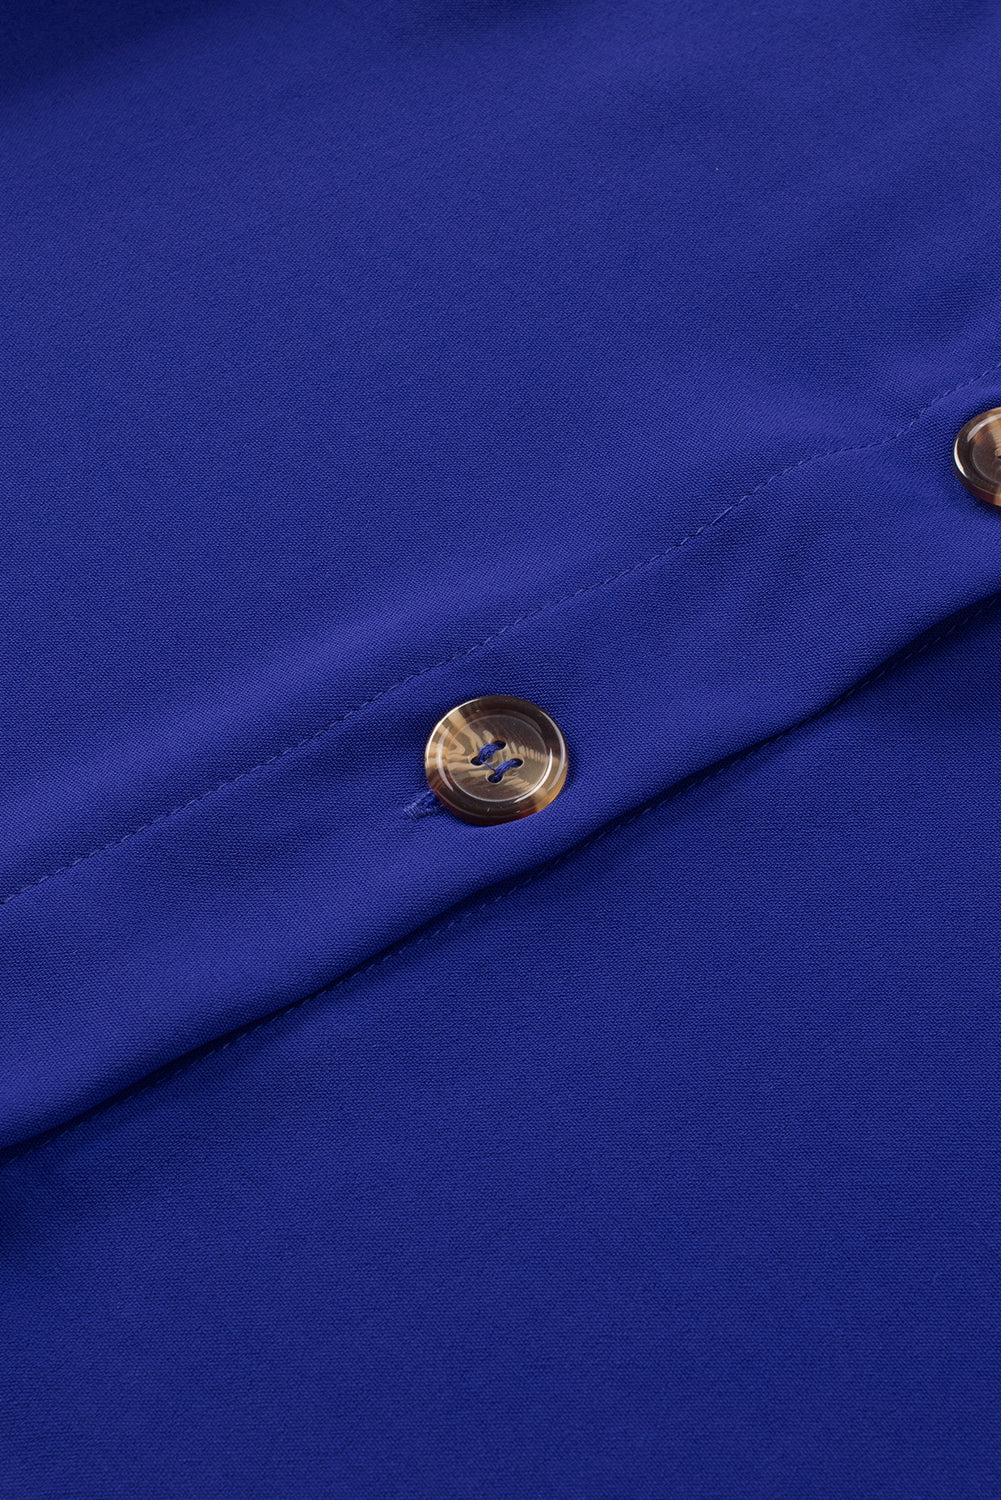 Blue Spaghetti Strap Buttoned Tank Top Tank Tops JT's Designer Fashion